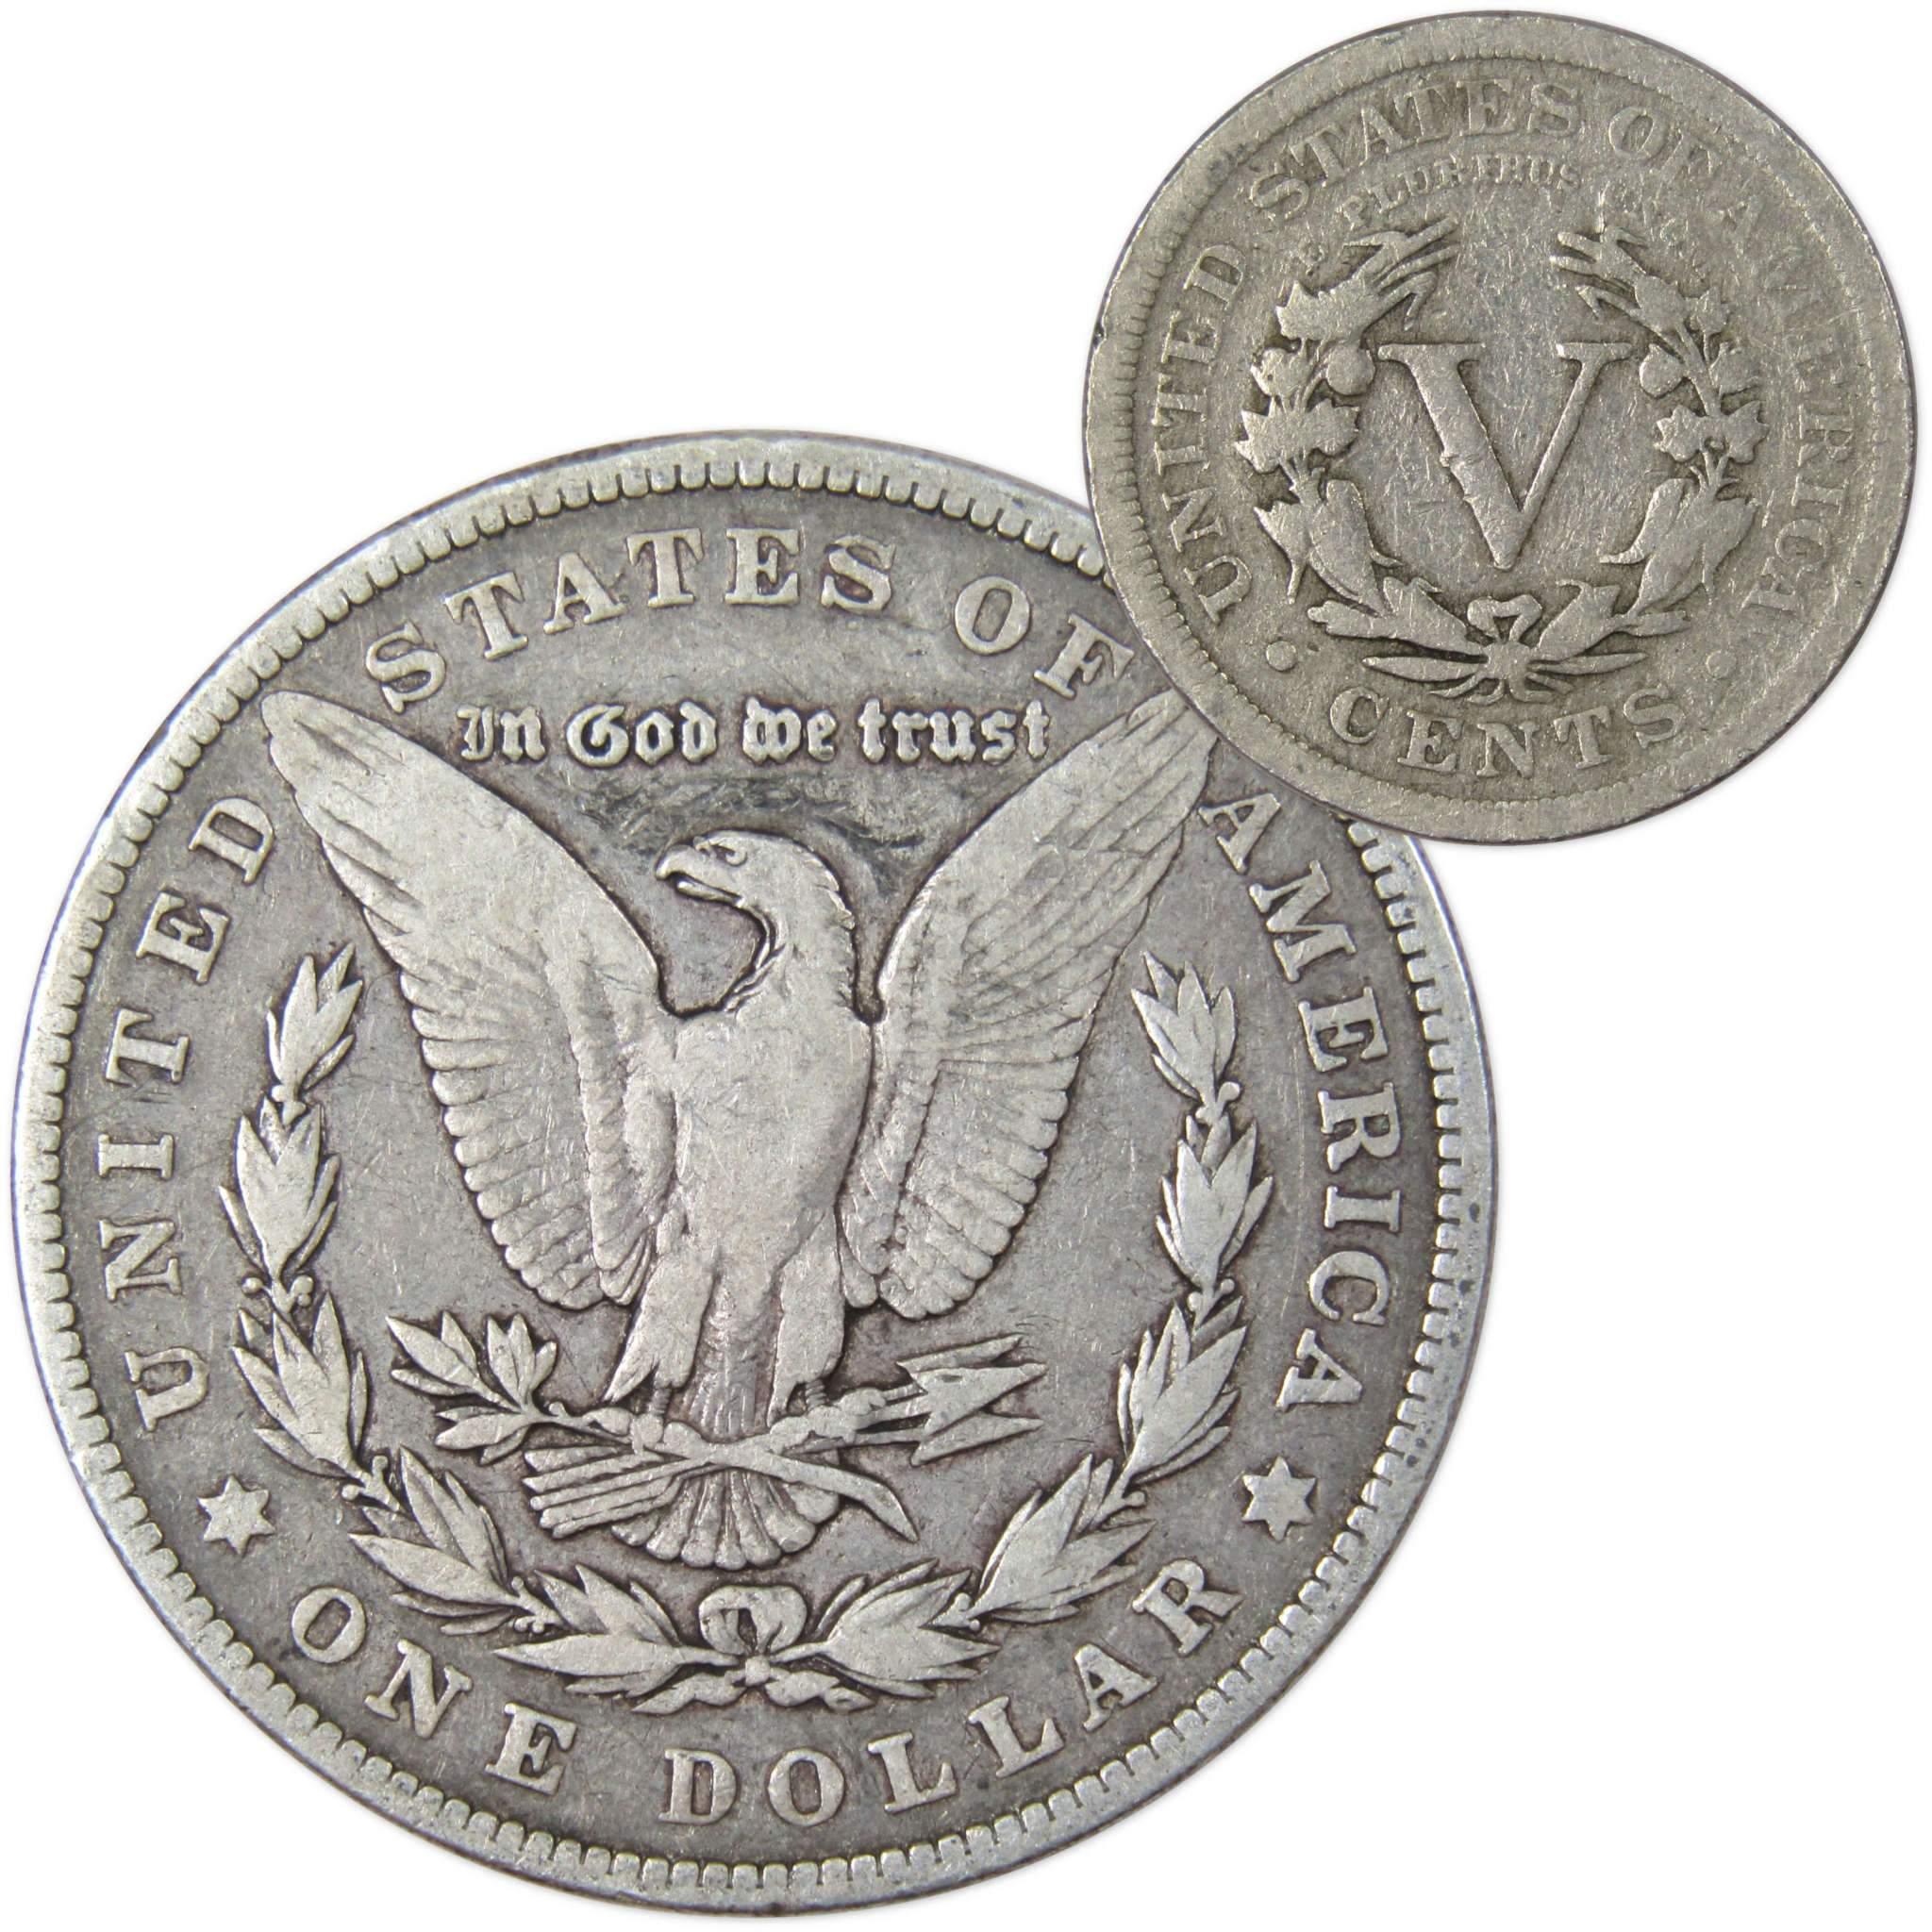 1900 Morgan Dollar VF Very Fine 90% Silver Coin with 1905 Liberty Nickel G Good - Morgan coin - Morgan silver dollar - Morgan silver dollar for sale - Profile Coins &amp; Collectibles